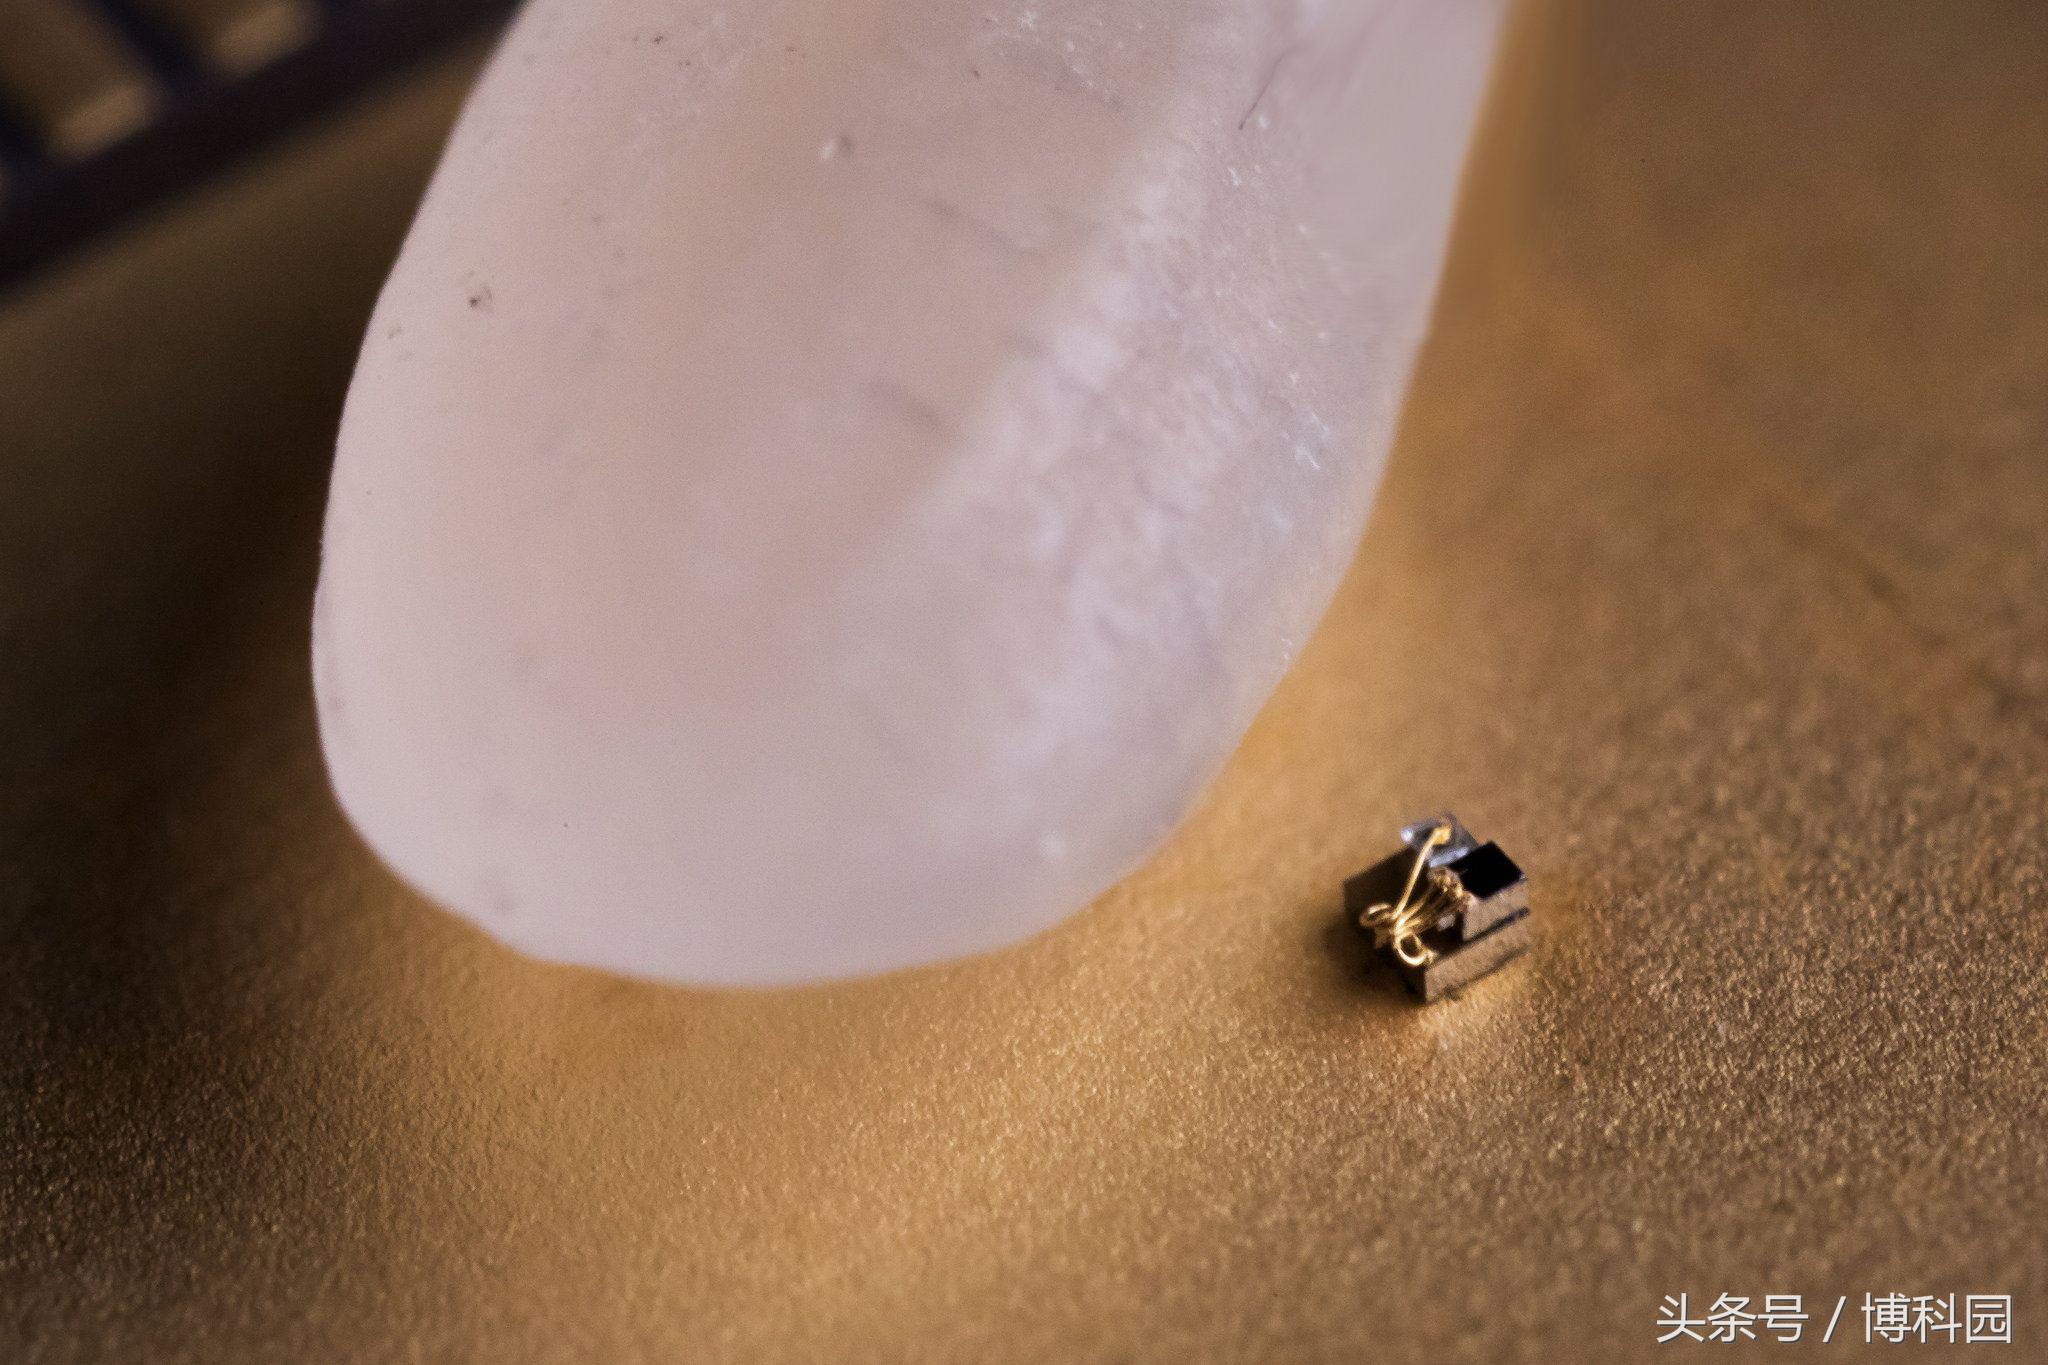 世界上最小“计算机”只有0.3毫米大